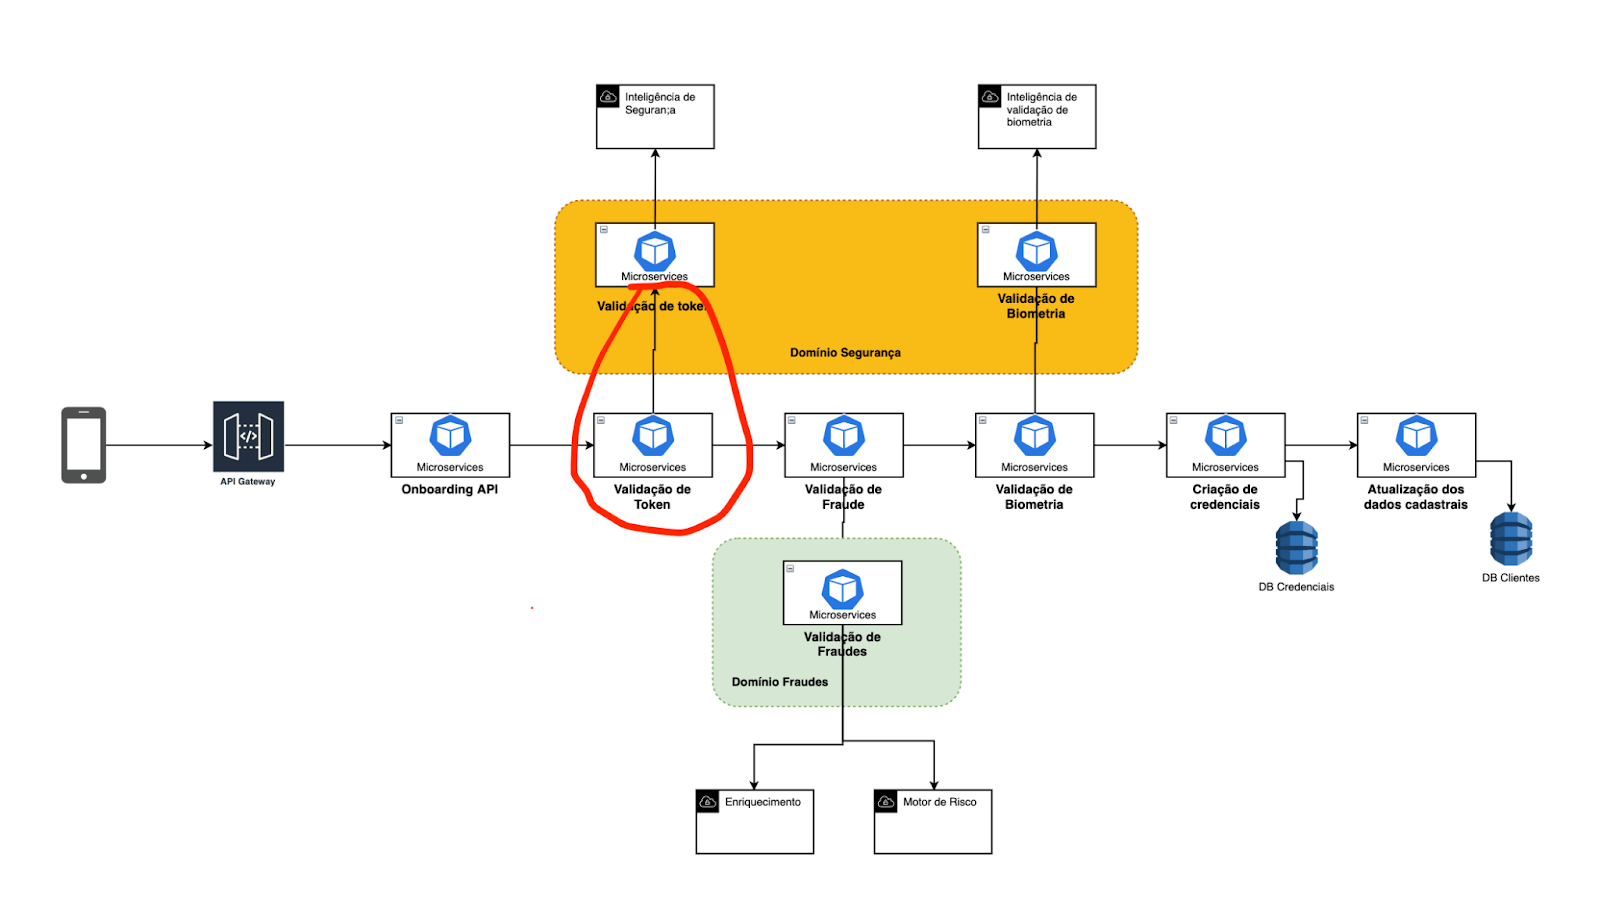 Apresentando novamente o diagrama de arquitetura do fluxo de Onboarding destacando a segunda etapa de recebimento da validação do token.